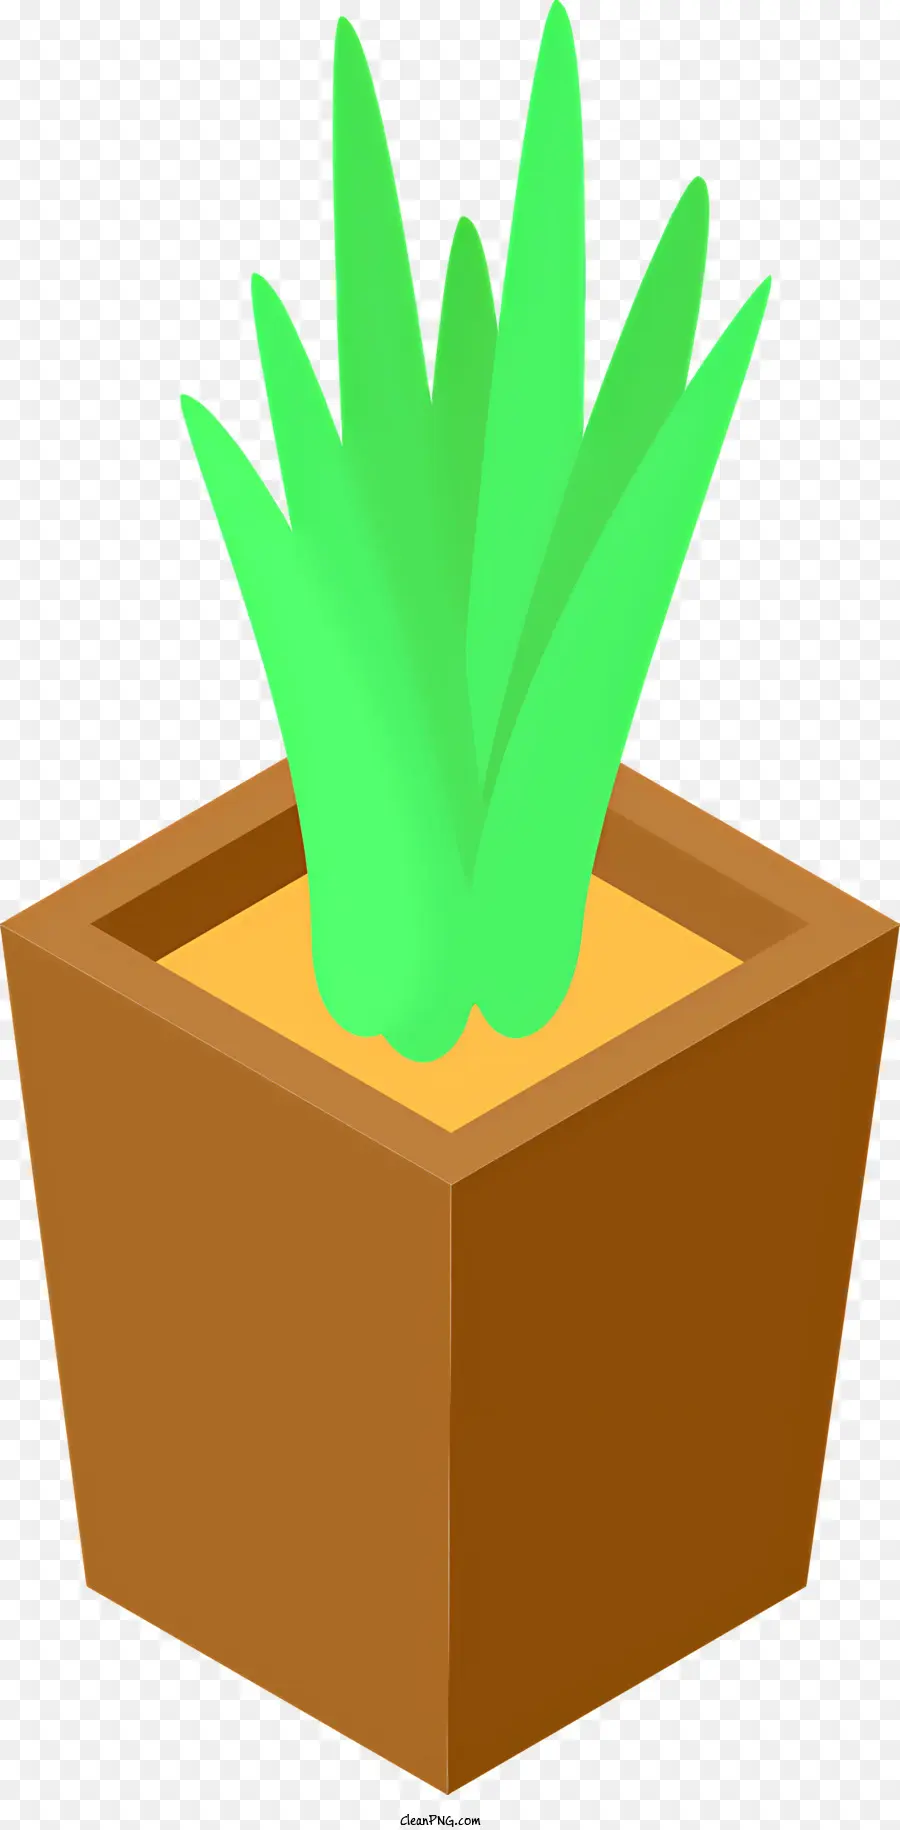 Icon Brauner Topf kleiner Pflanze grüne Pflanzenboden - Gesunde grüne Pflanze im Topf, geeignet für die Pflanzenpflege -App